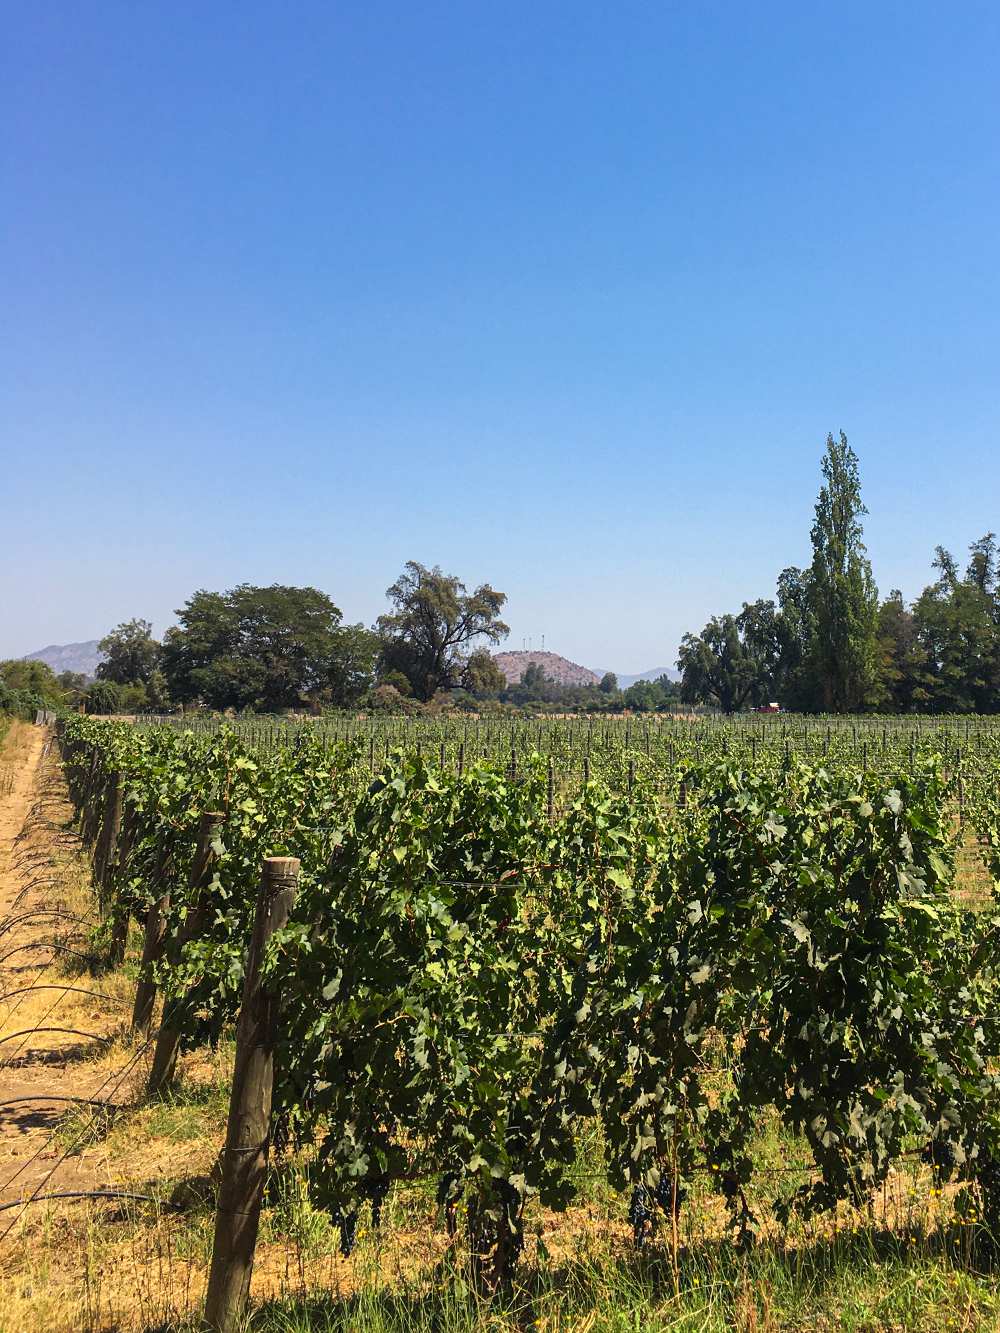 Виноградники. Этот район считается самым «виноградным» во всей Латинской Америке, тут находятся самые крупные заводы по производству вина